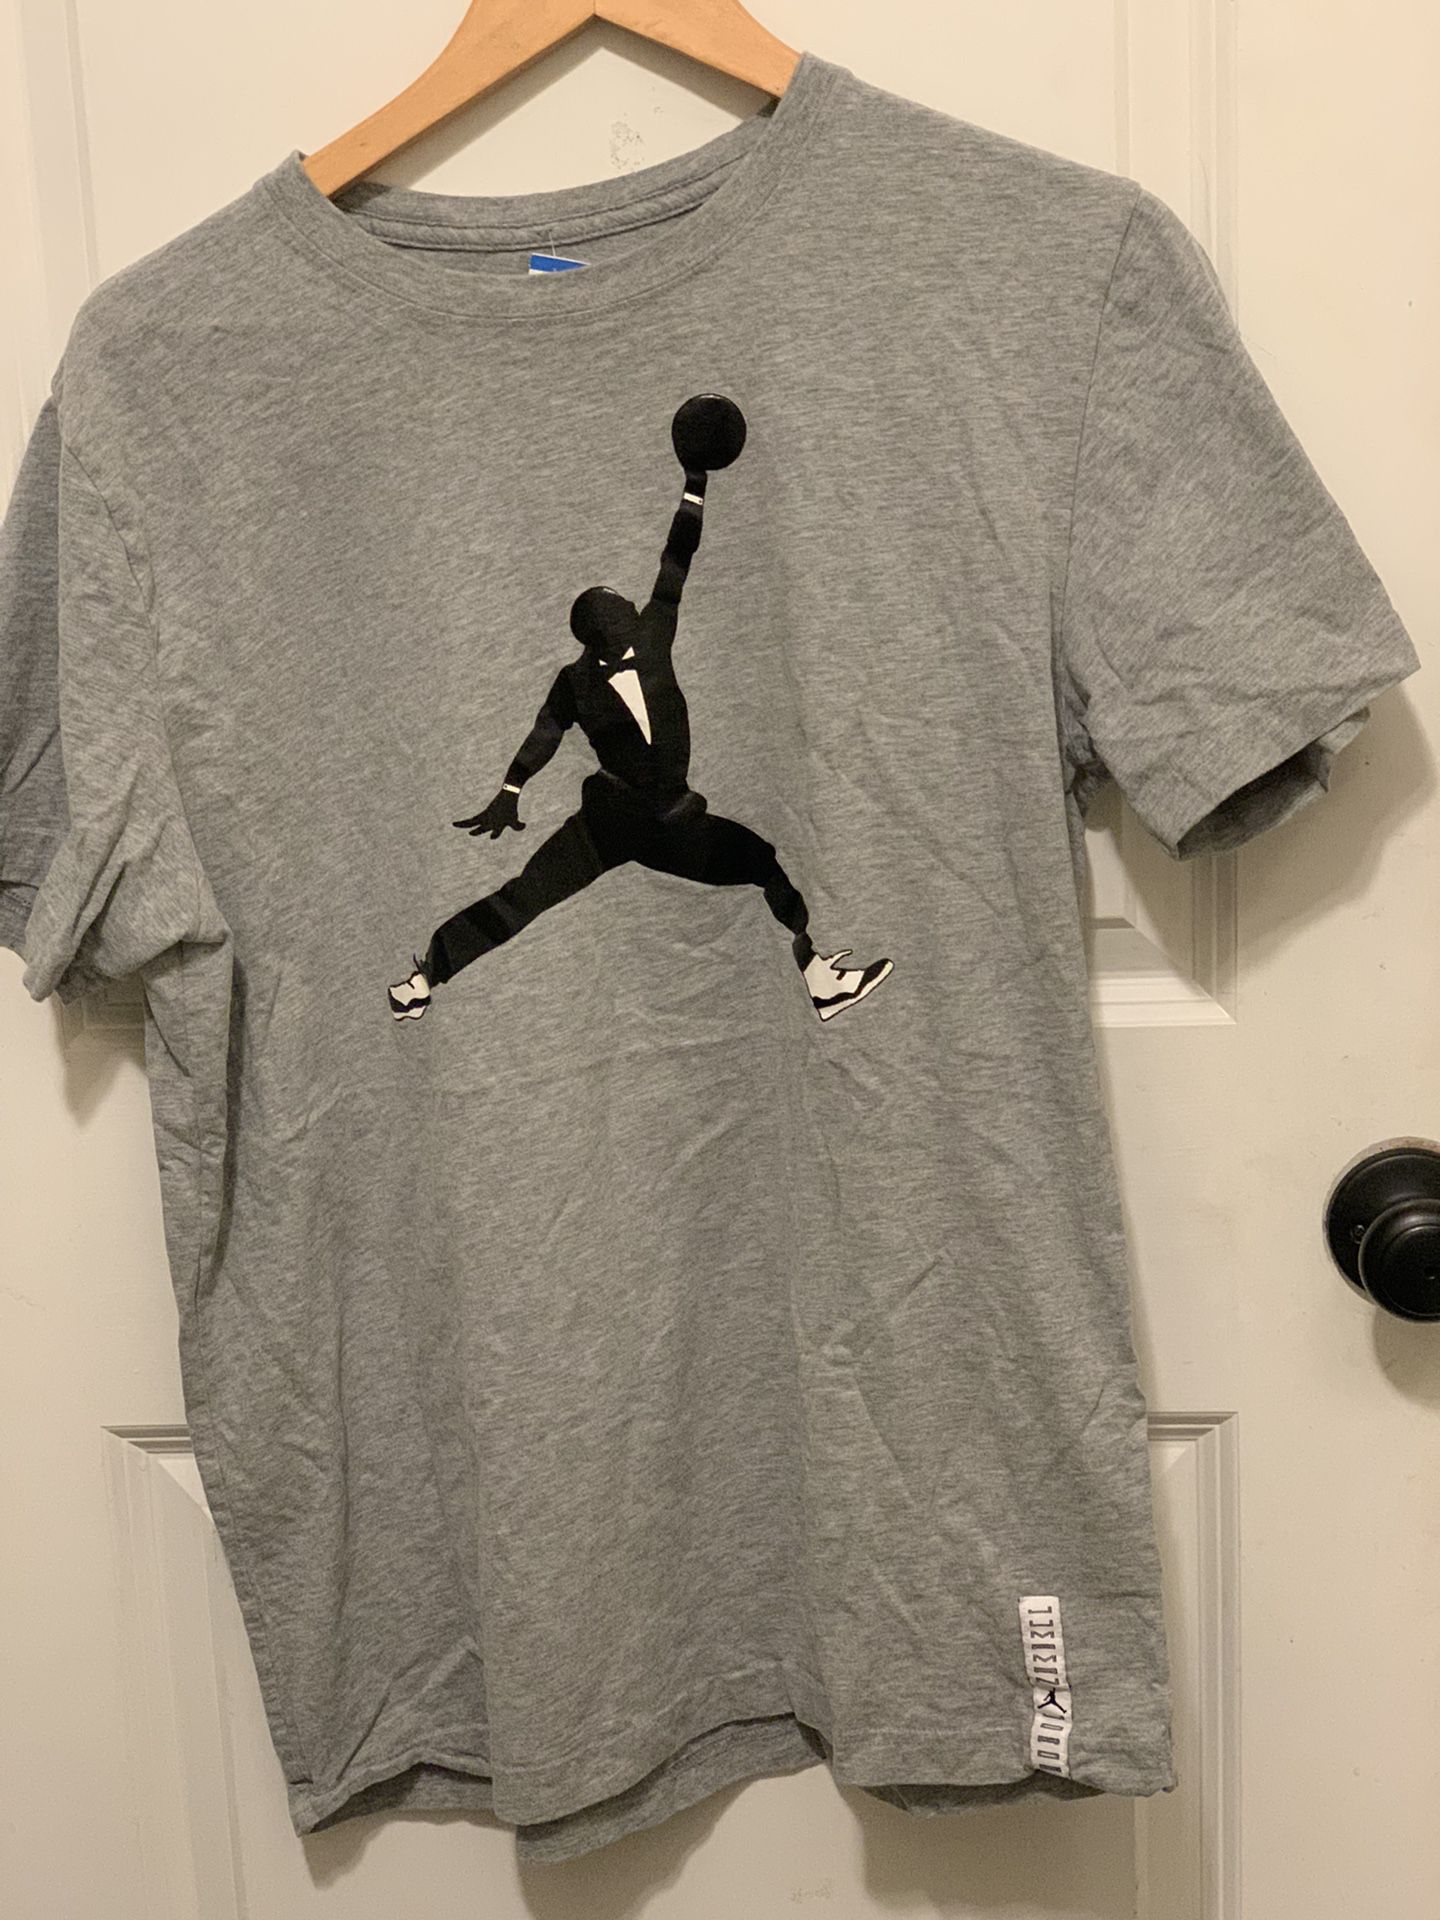 Nike air Jordan  Tshirt size XL Gently Used 